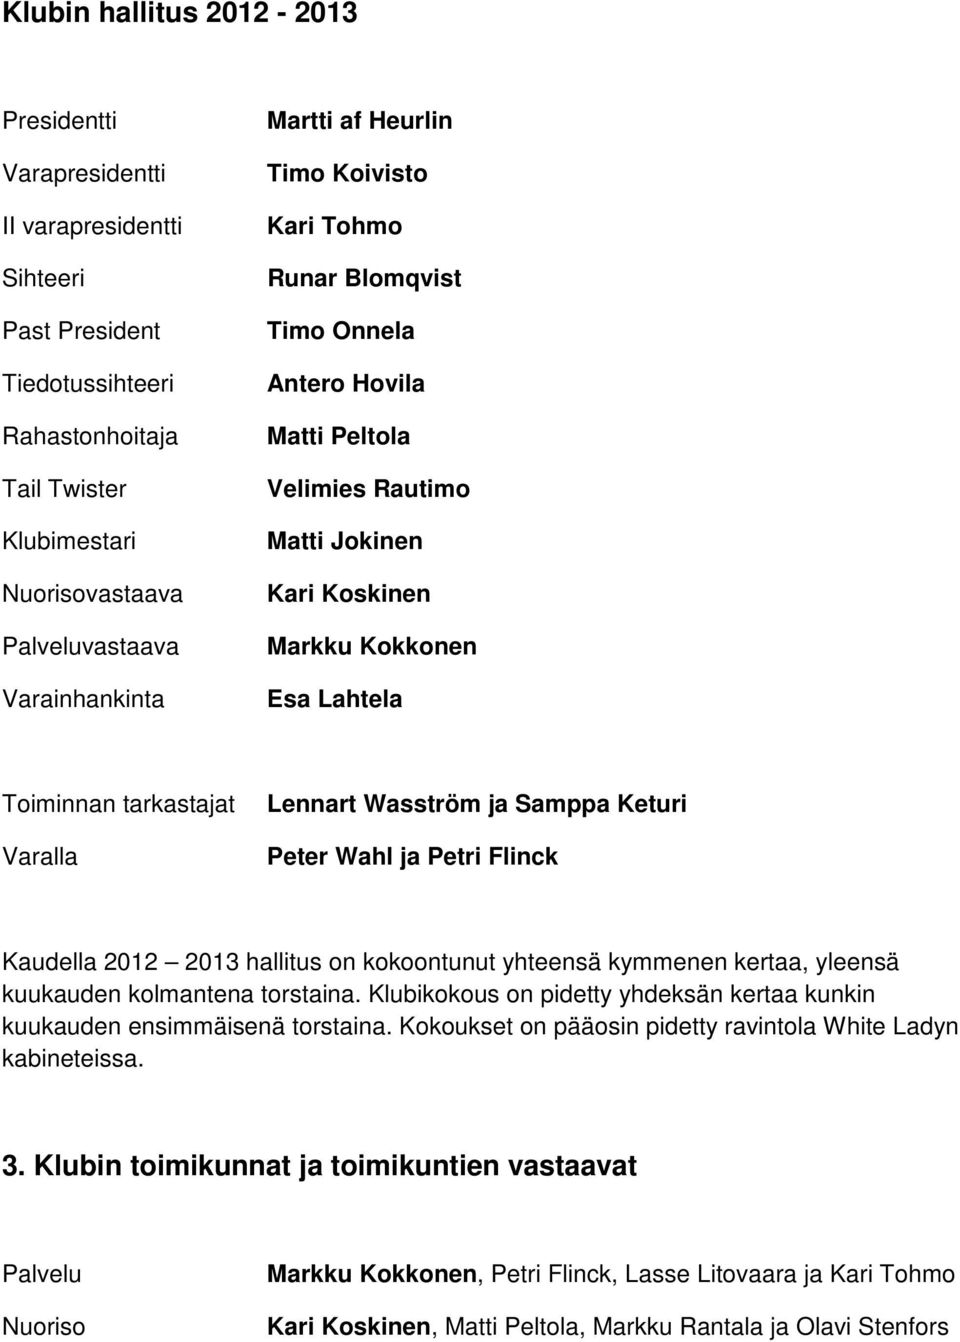 tarkastajat Varalla Lennart Wasström ja Samppa Keturi Peter Wahl ja Petri Flinck Kaudella 2012 2013 hallitus on kokoontunut yhteensä kymmenen kertaa, yleensä kuukauden kolmantena torstaina.